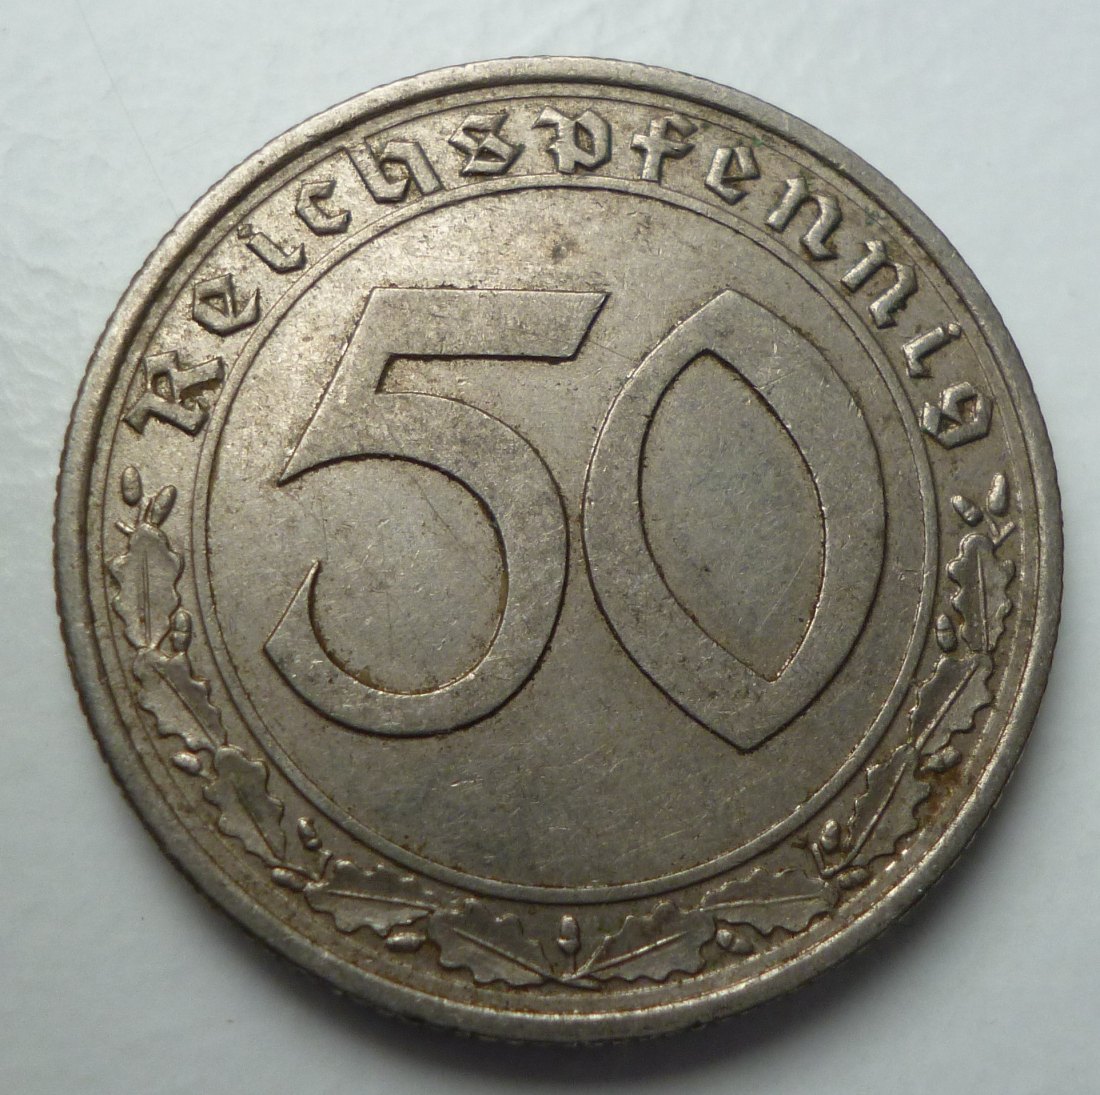  Deutsches Reich 50 Reichspfennig 1939 A   